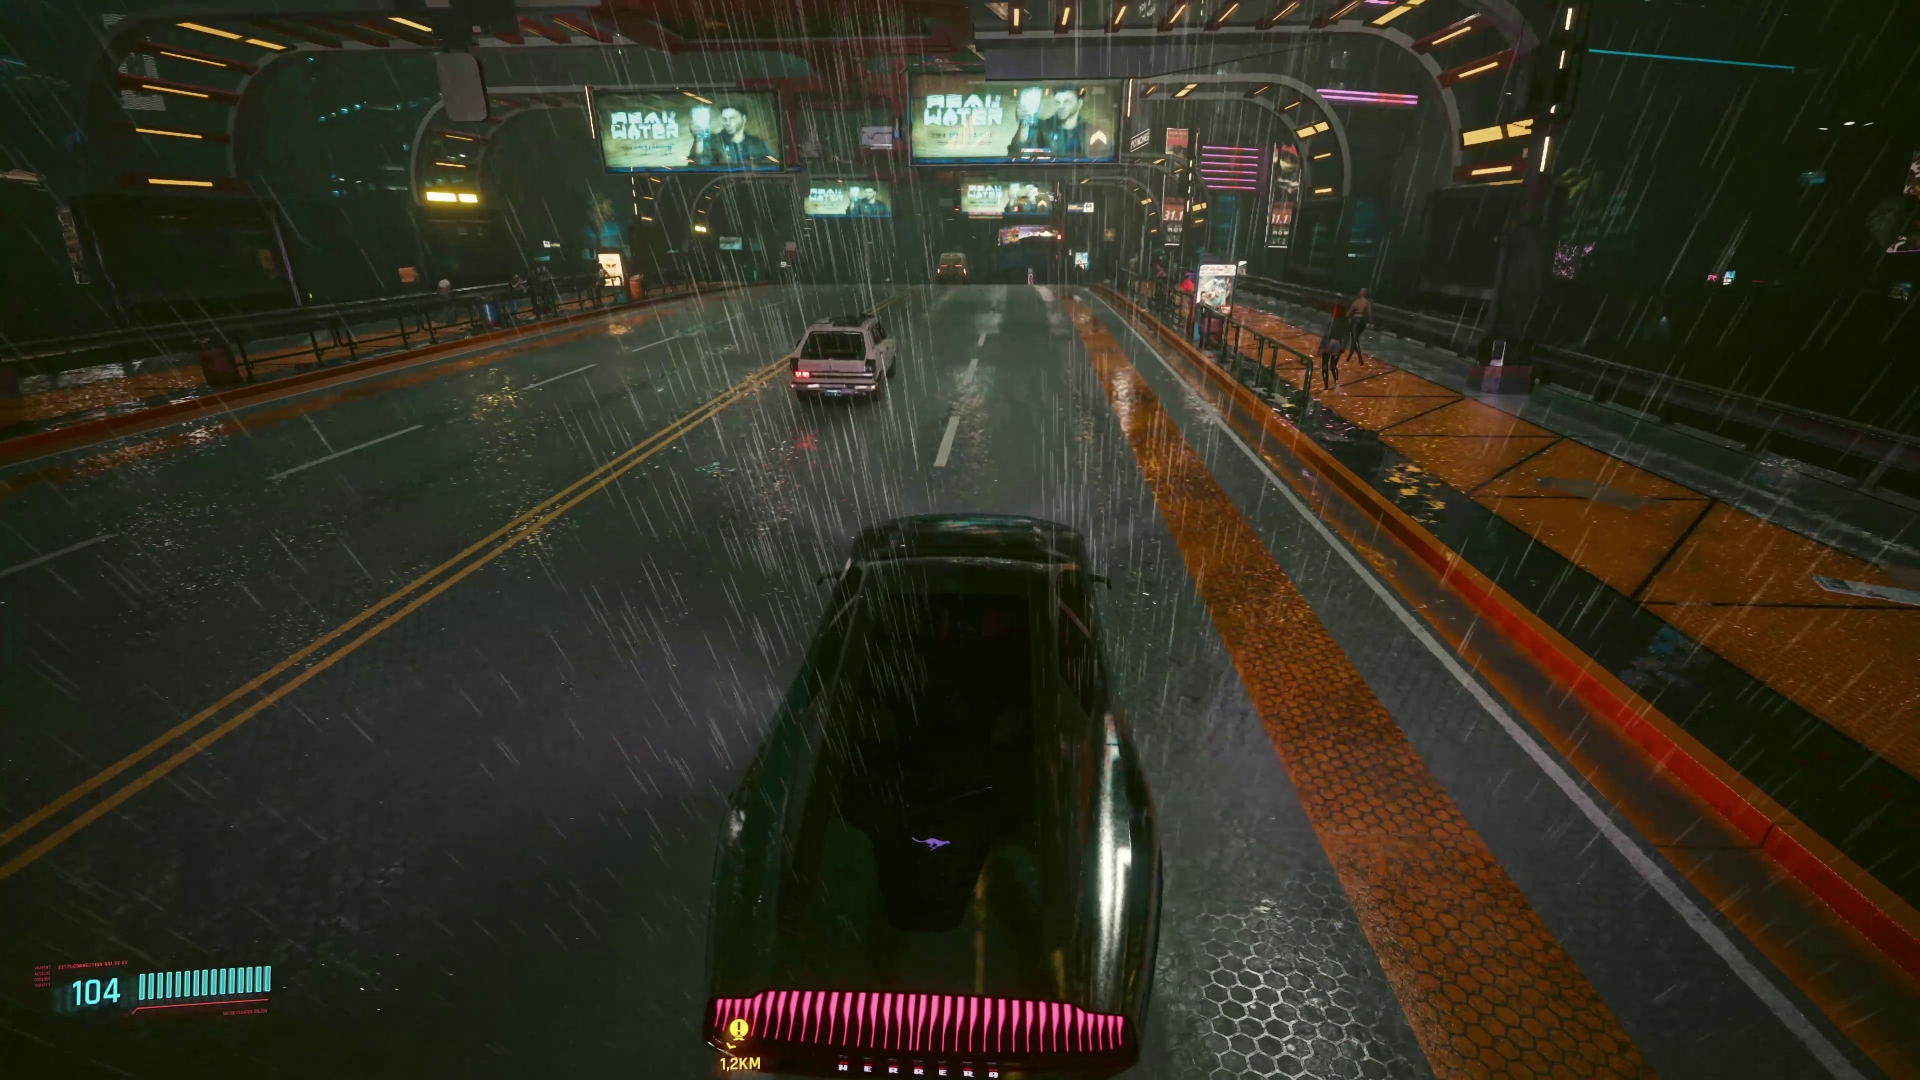 Ein Wagen drt nachts durch das verregnete Night City fährt. Screenshot aus dem Spiel Cyberpunk 2077